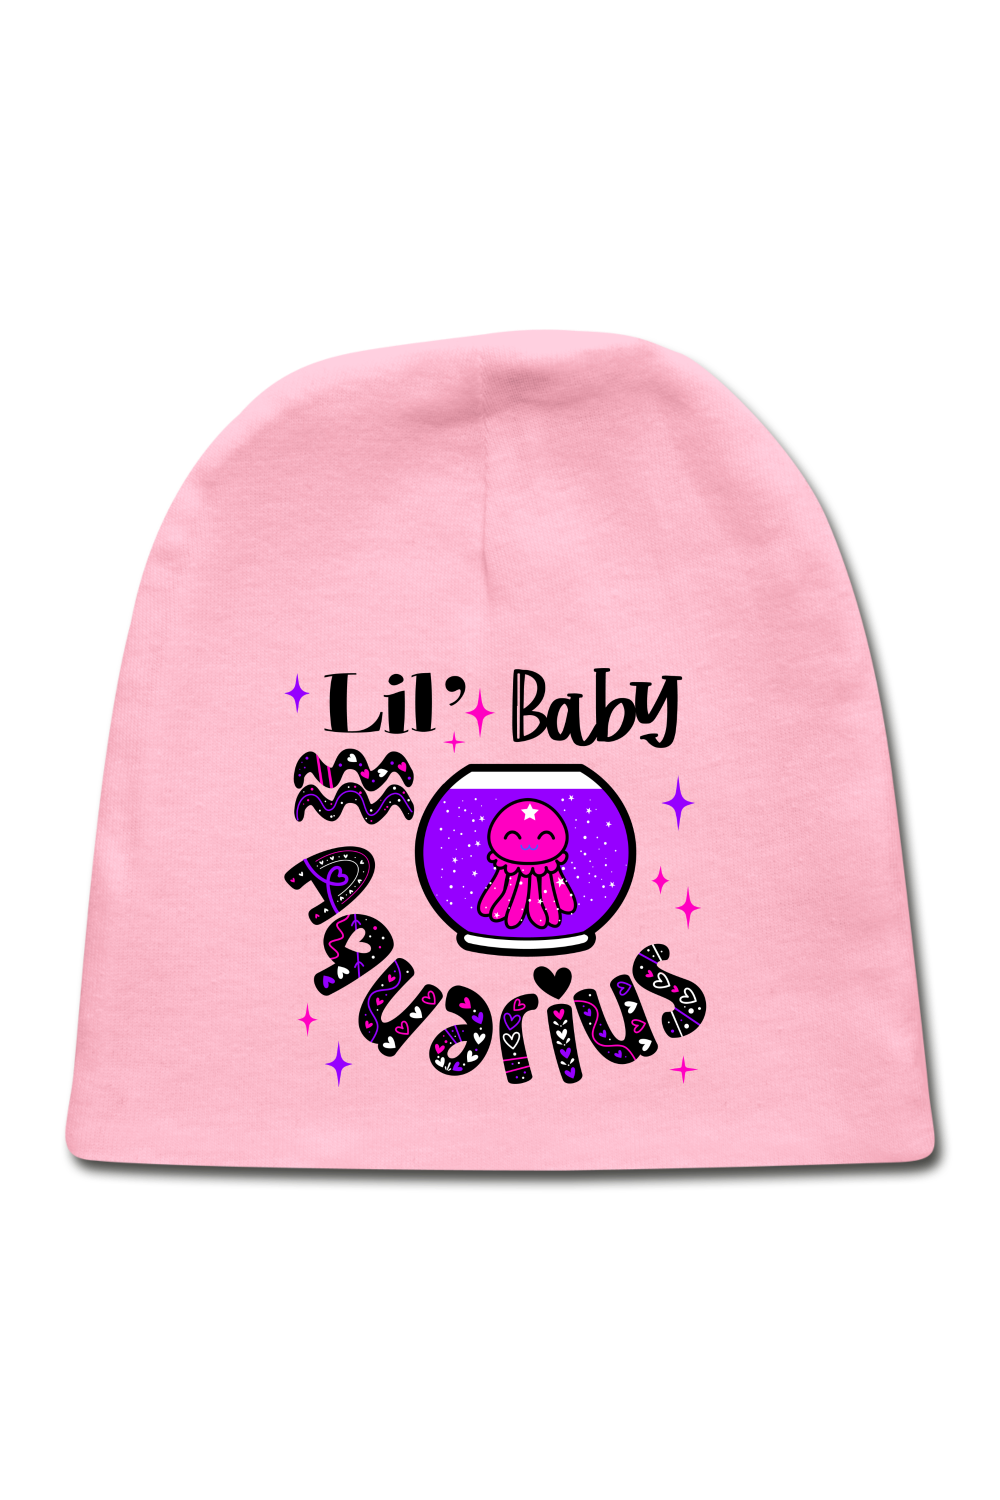 Unisex Baby Aquarius Pink Cap - NicholesGifts.online